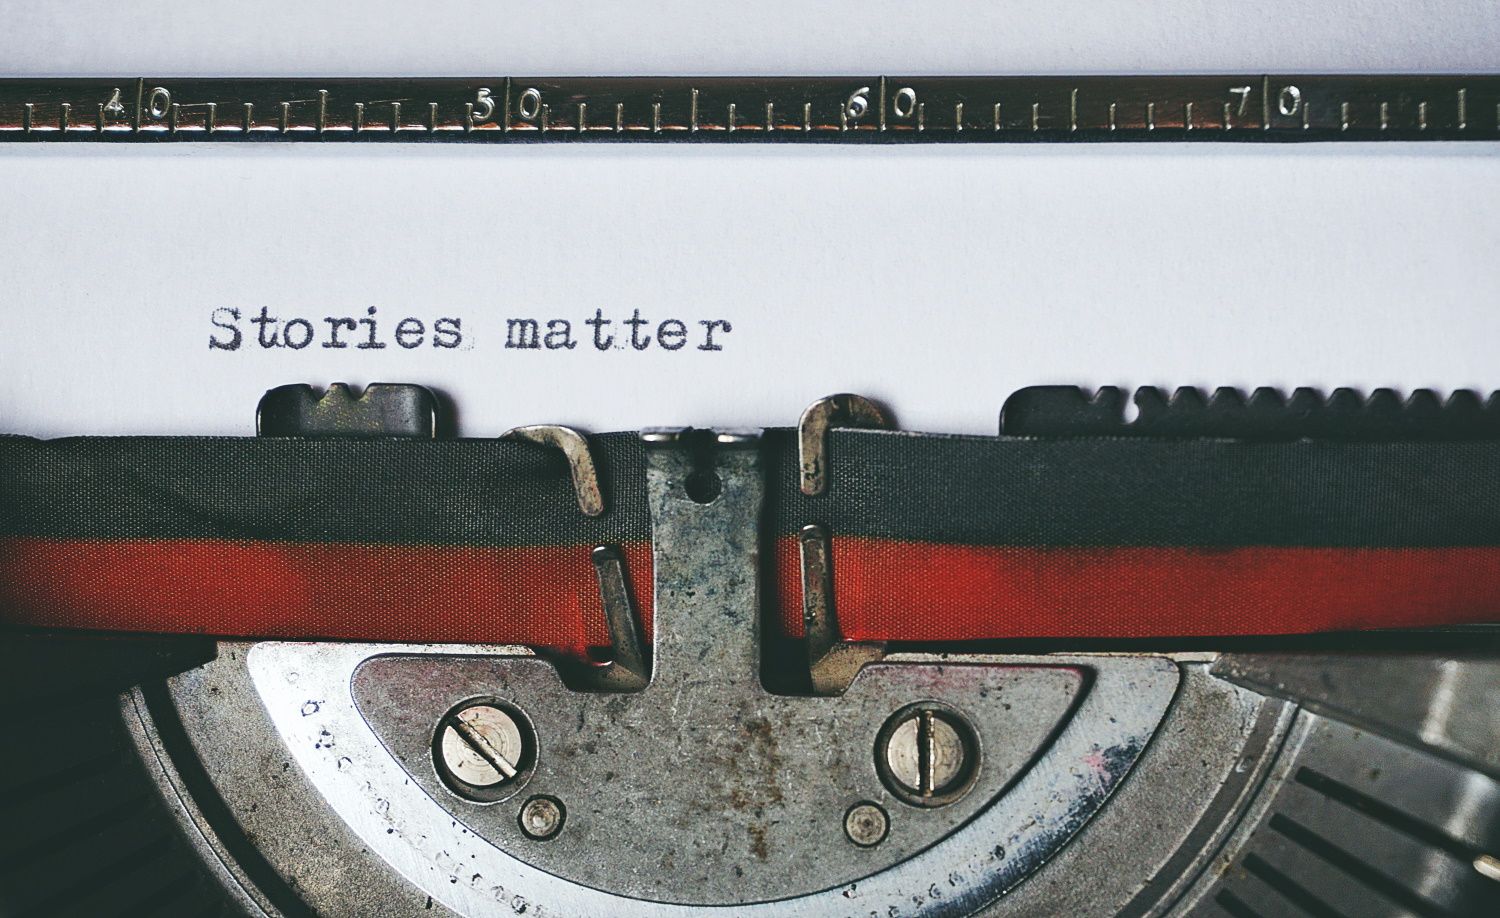 stories matter typed on a typewriter